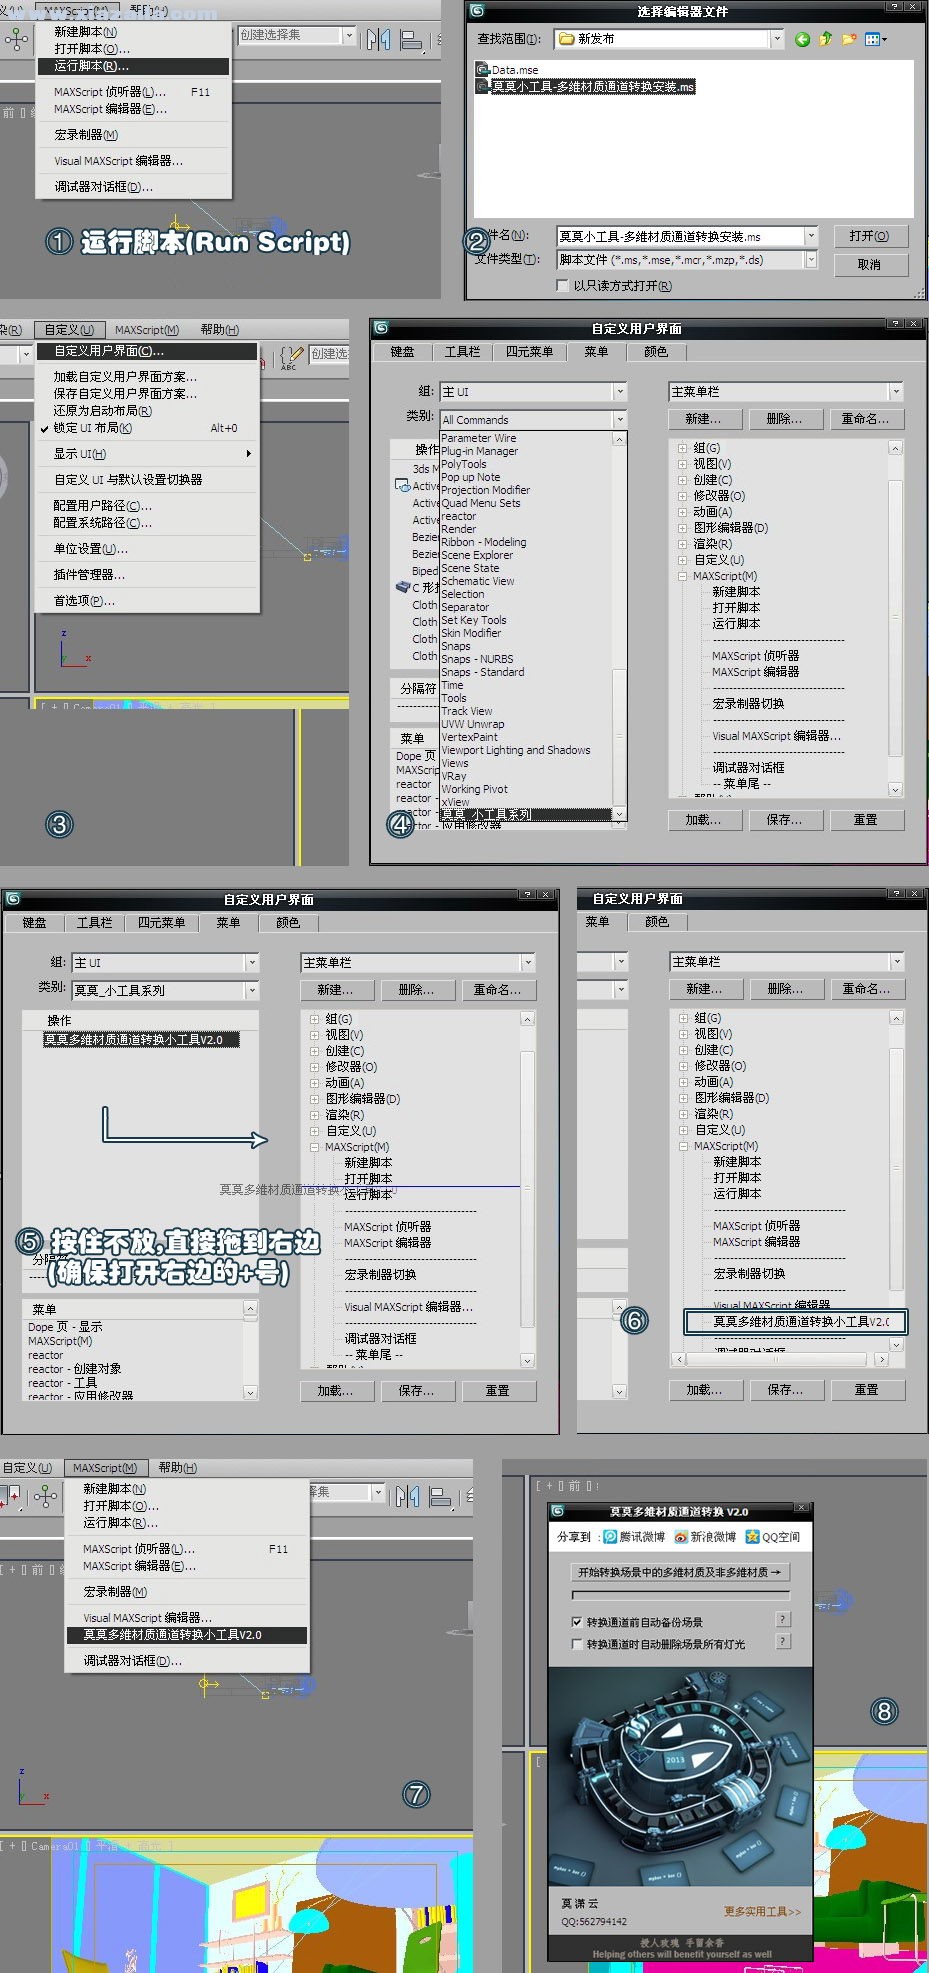 莫莫多维材质通道转换工具 v2.0中文版